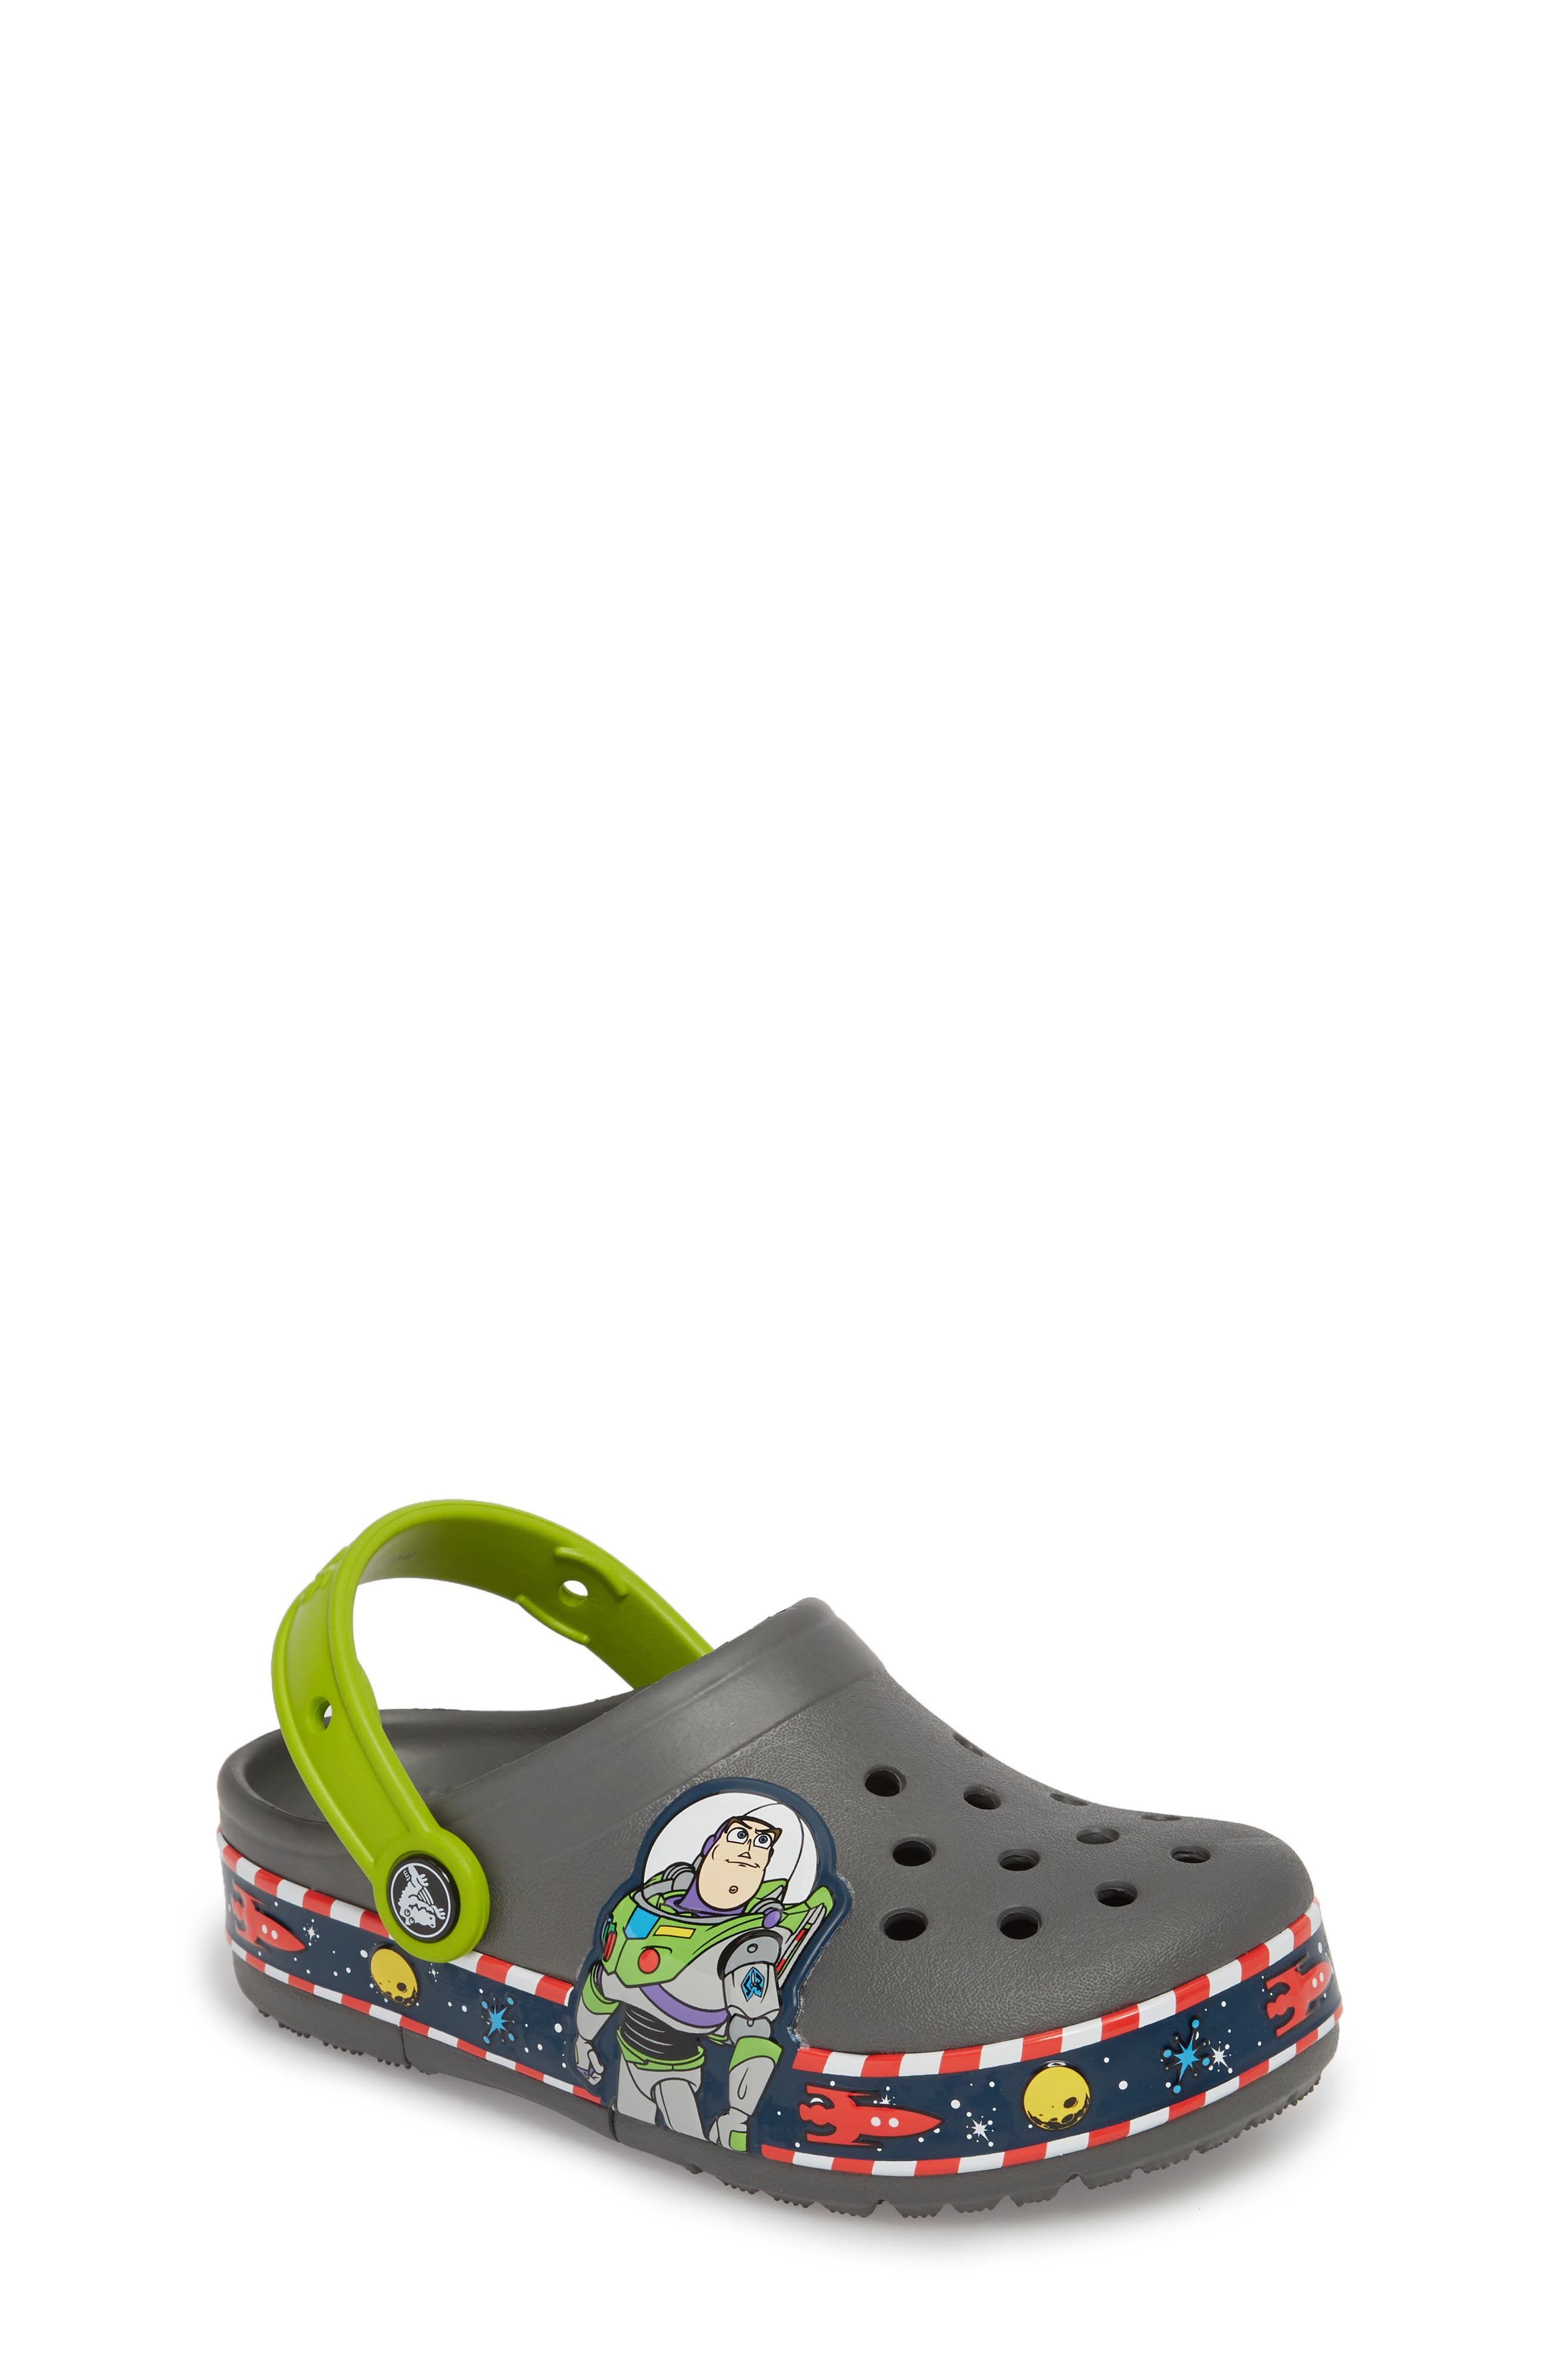 toy story crocs size 7